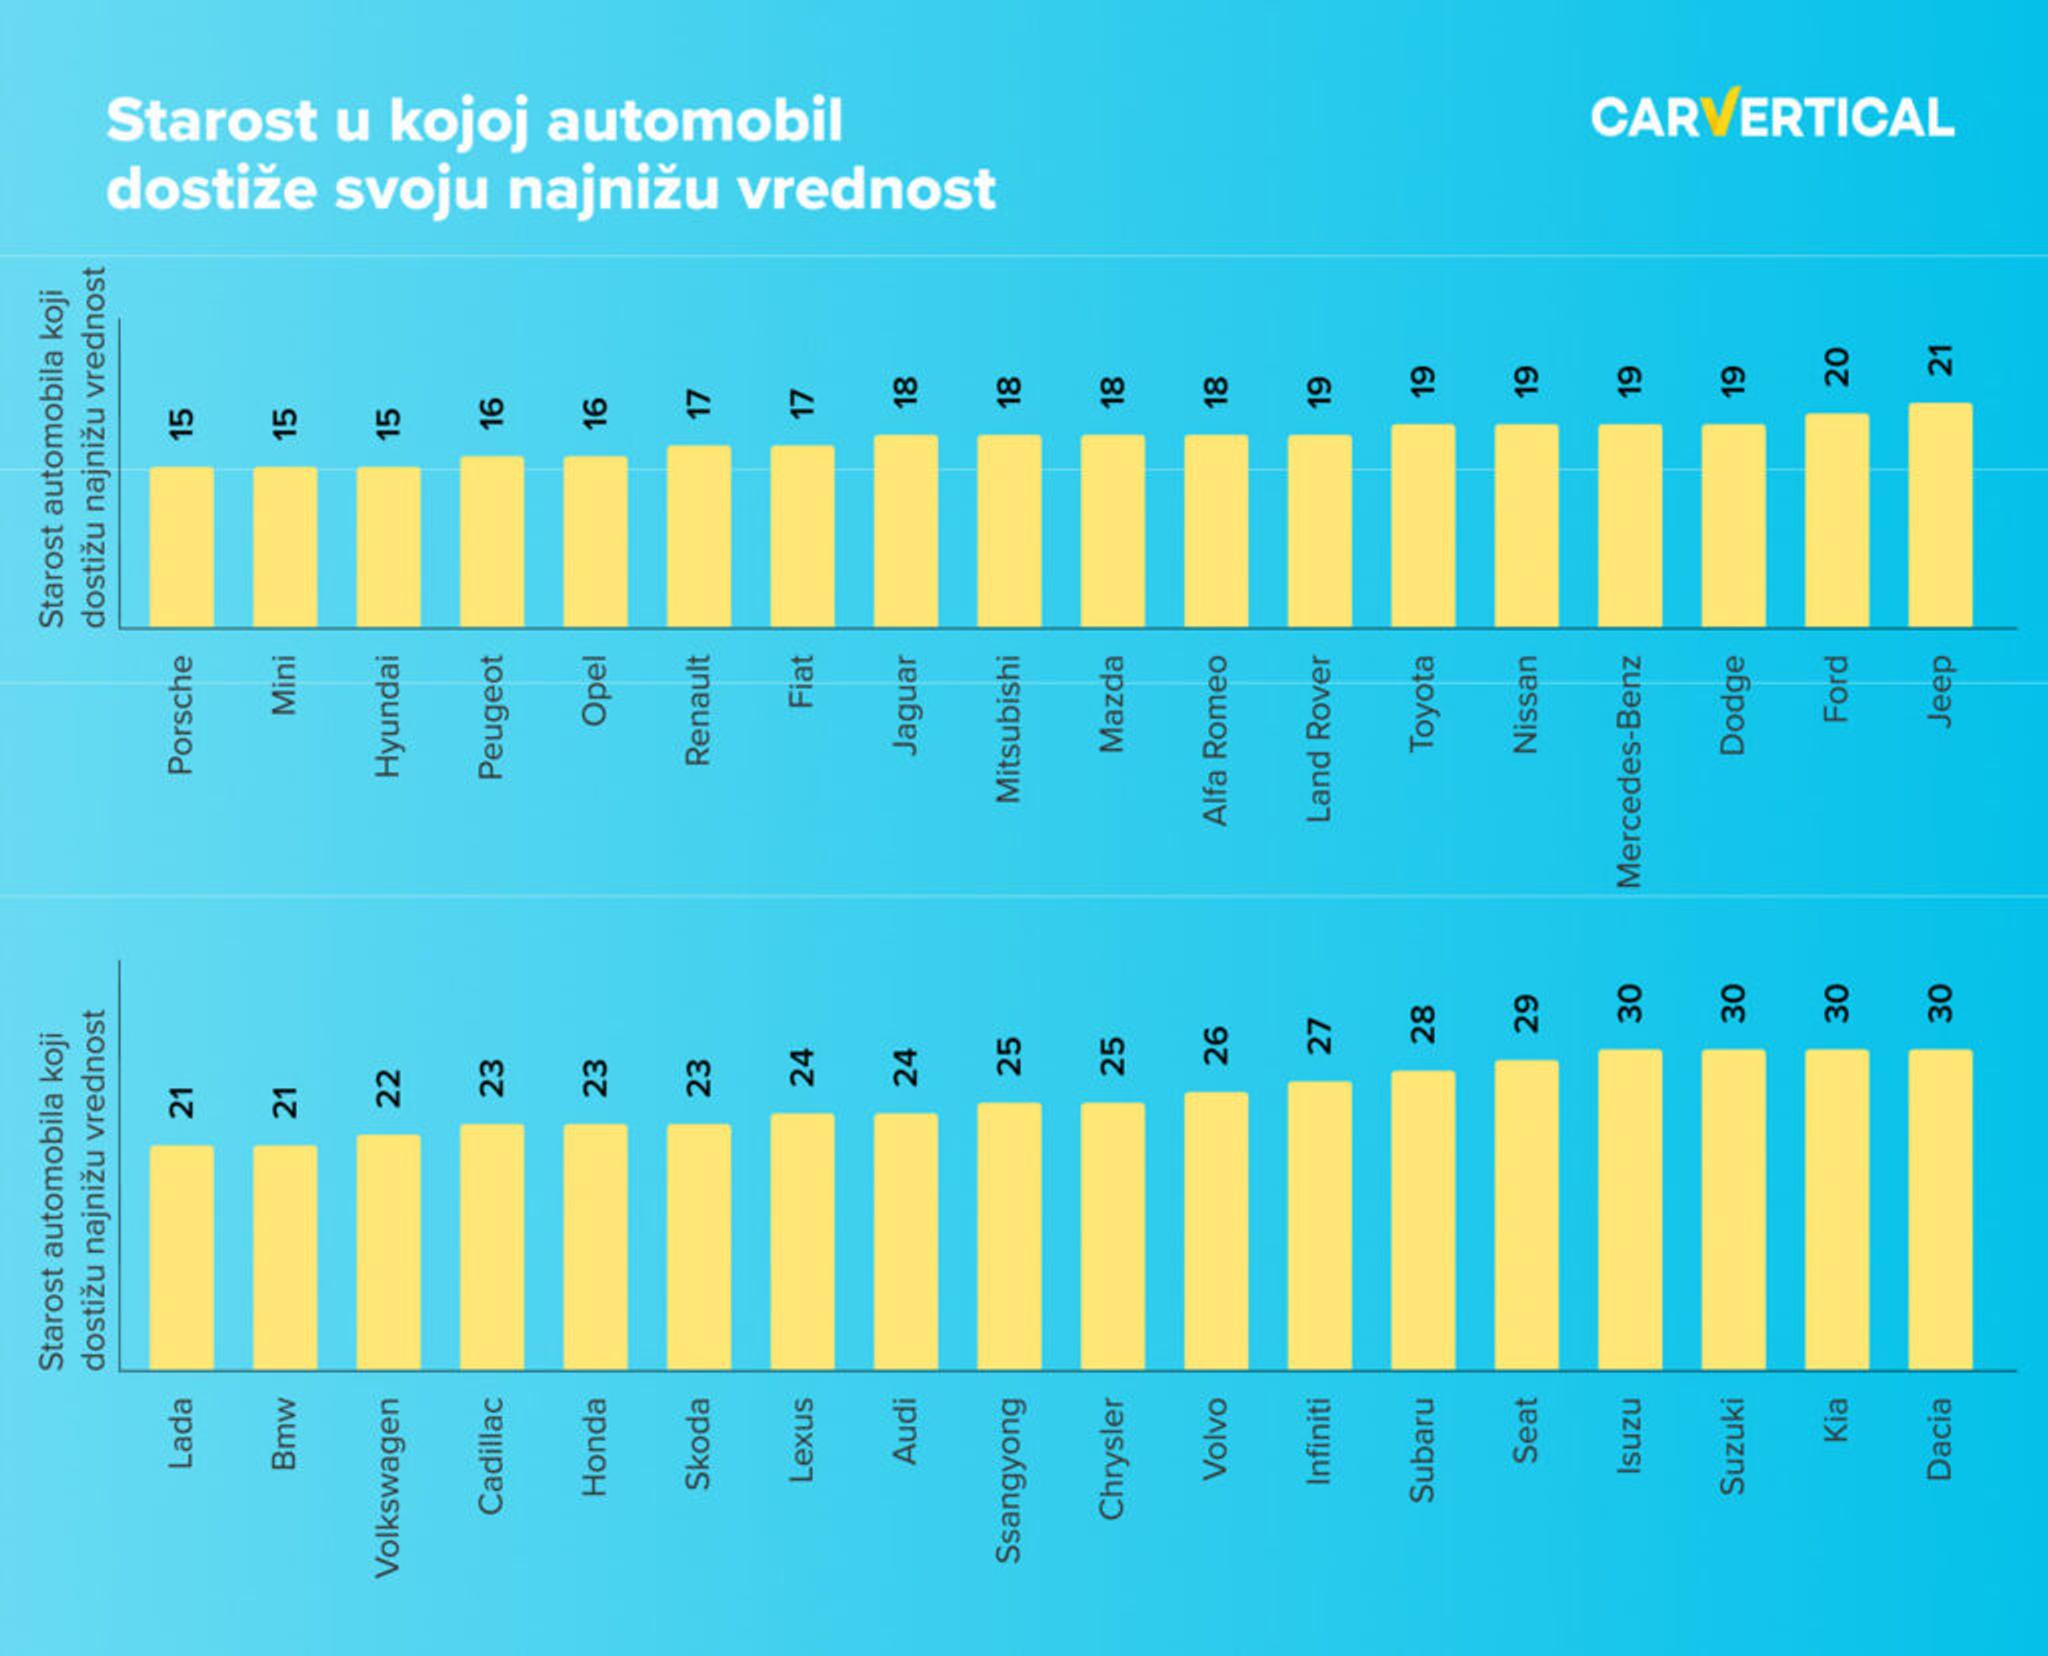 Polovni automobili dostižu najnižu vrednost u različitim godinama